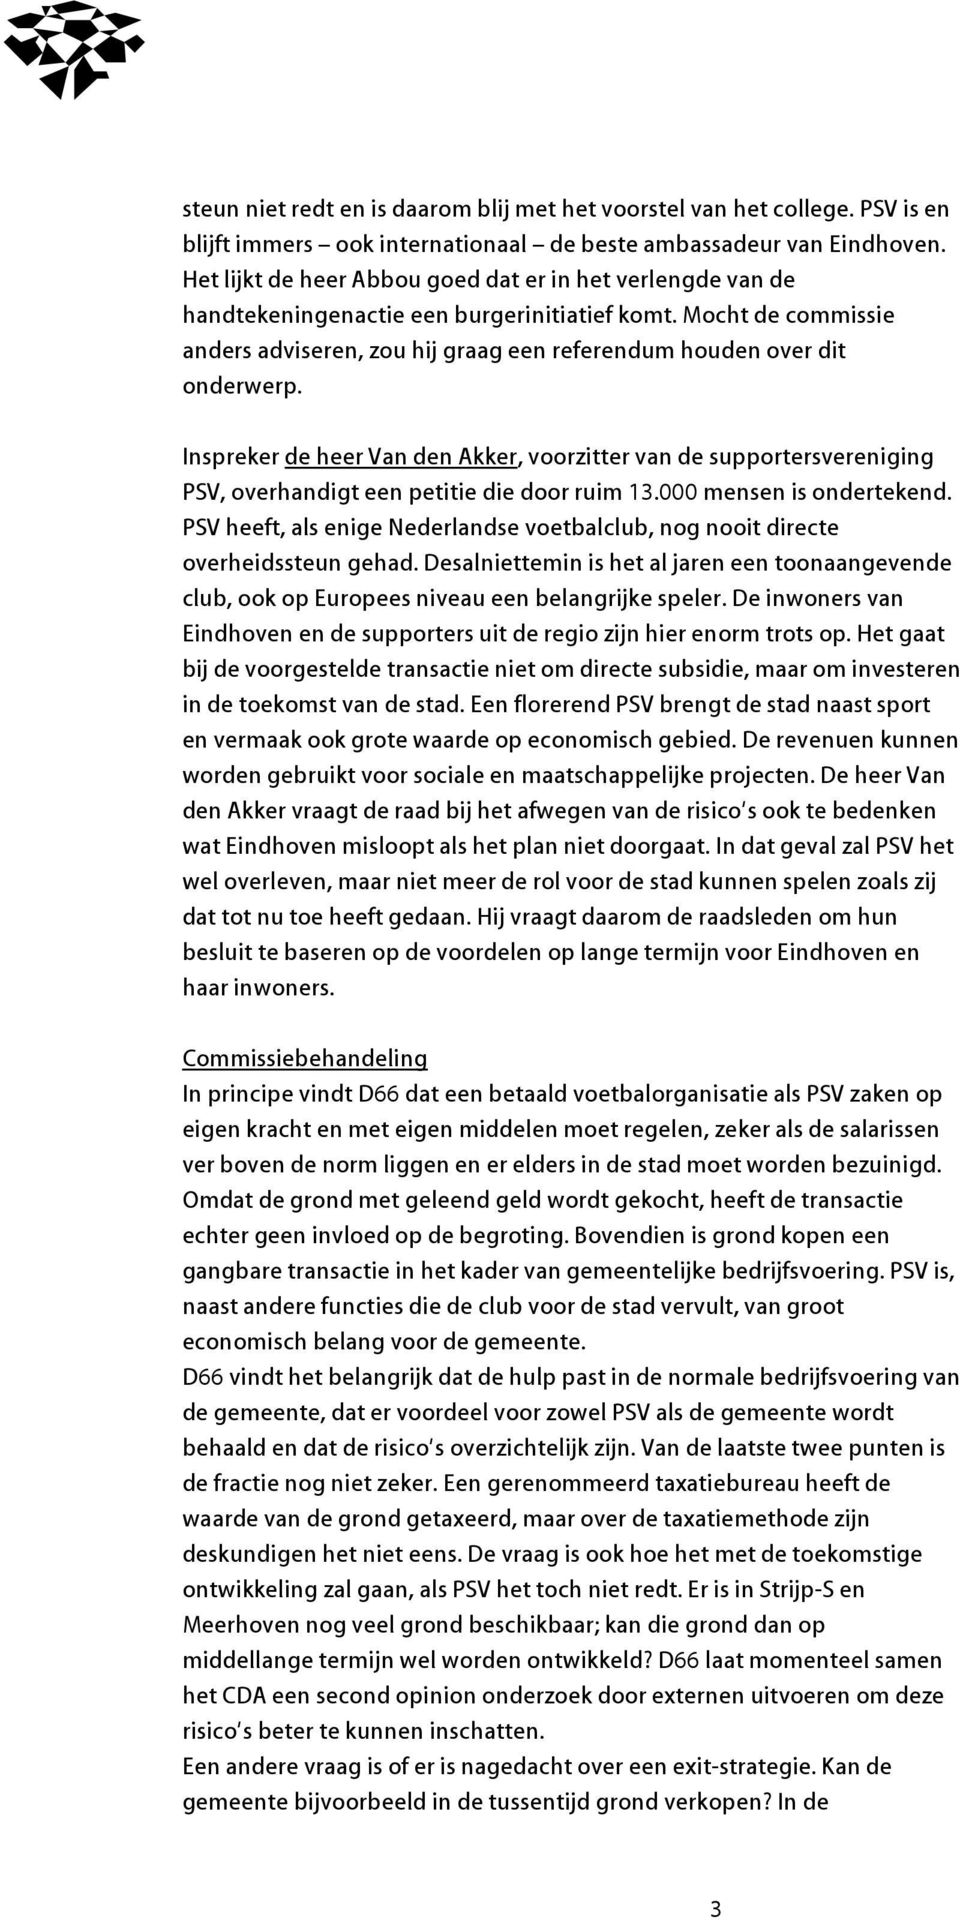 Inspreker de heer Van den Akker, voorzitter van de supportersvereniging PSV, overhandigt een petitie die door ruim 13.000 mensen is ondertekend.